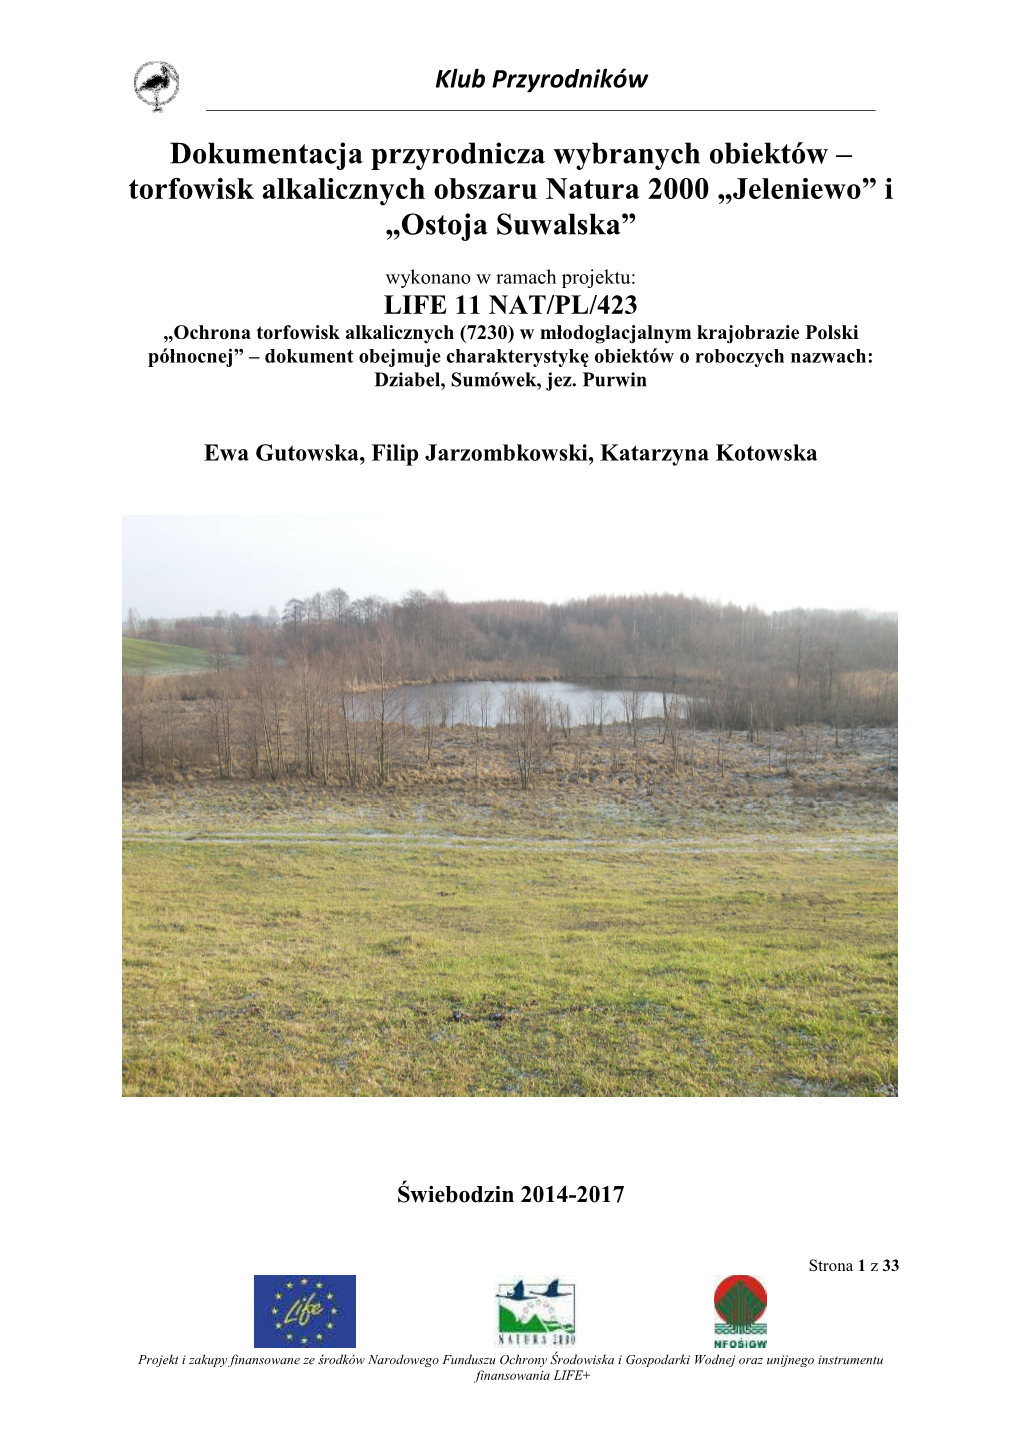 Torfowisk Alkalicznych Obszaru Natura 2000 „Jeleniewo” I „Ostoja Suwalska”